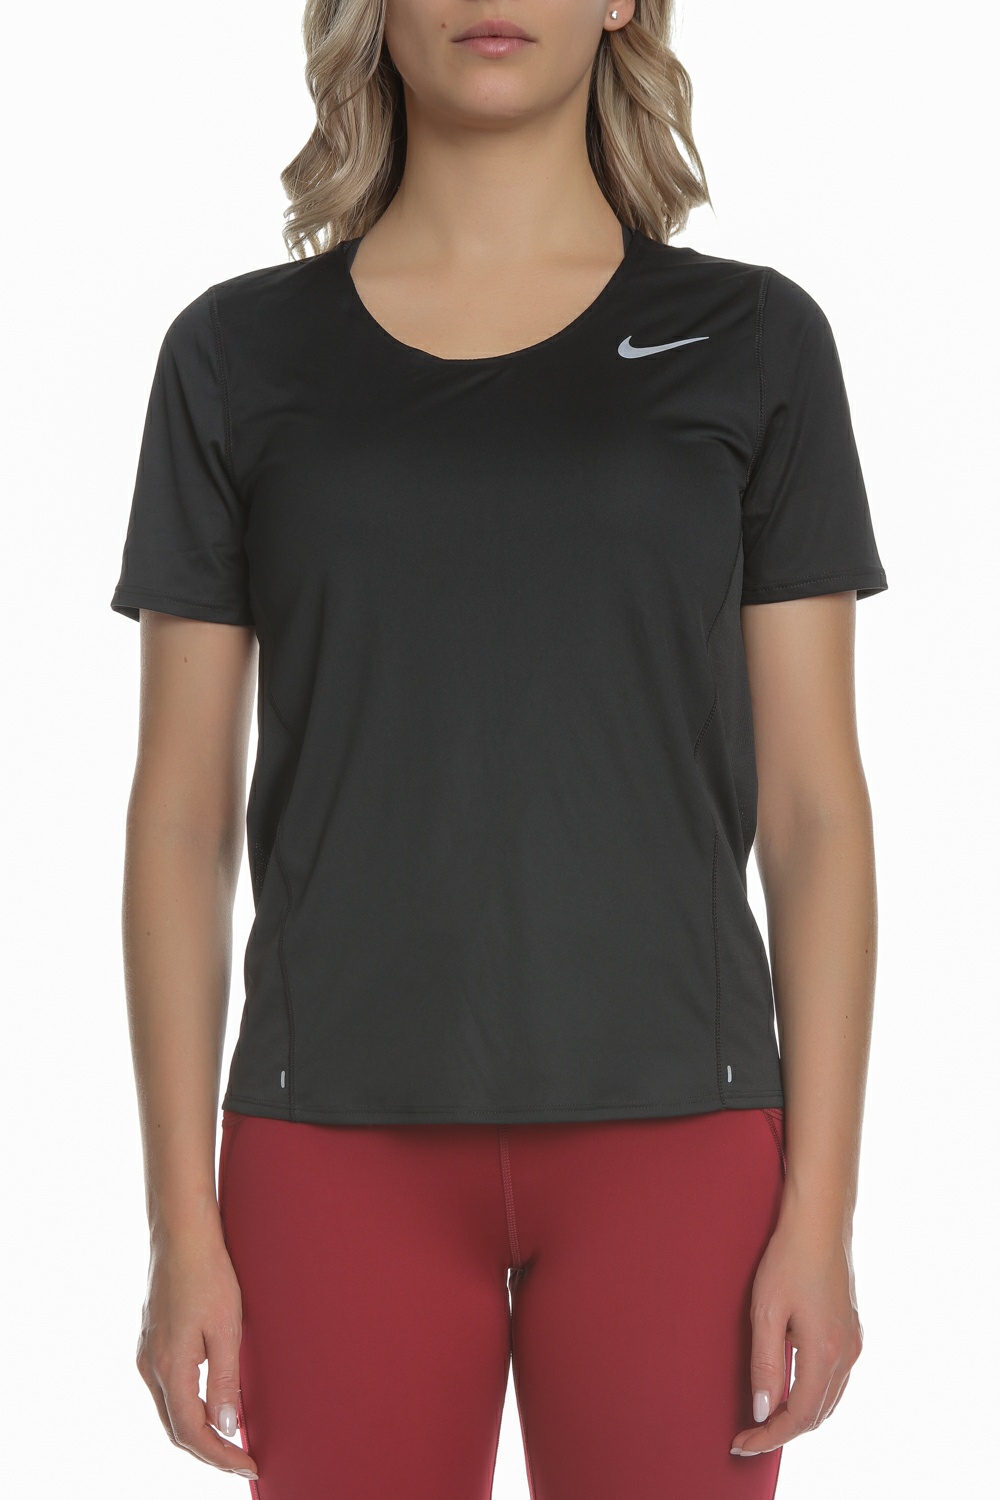 Γυναικεία/Ρούχα/Αθλητικά/T-shirt-Τοπ NIKE - Γυναικείο t-hirt NIKE City Sleek μαύρο